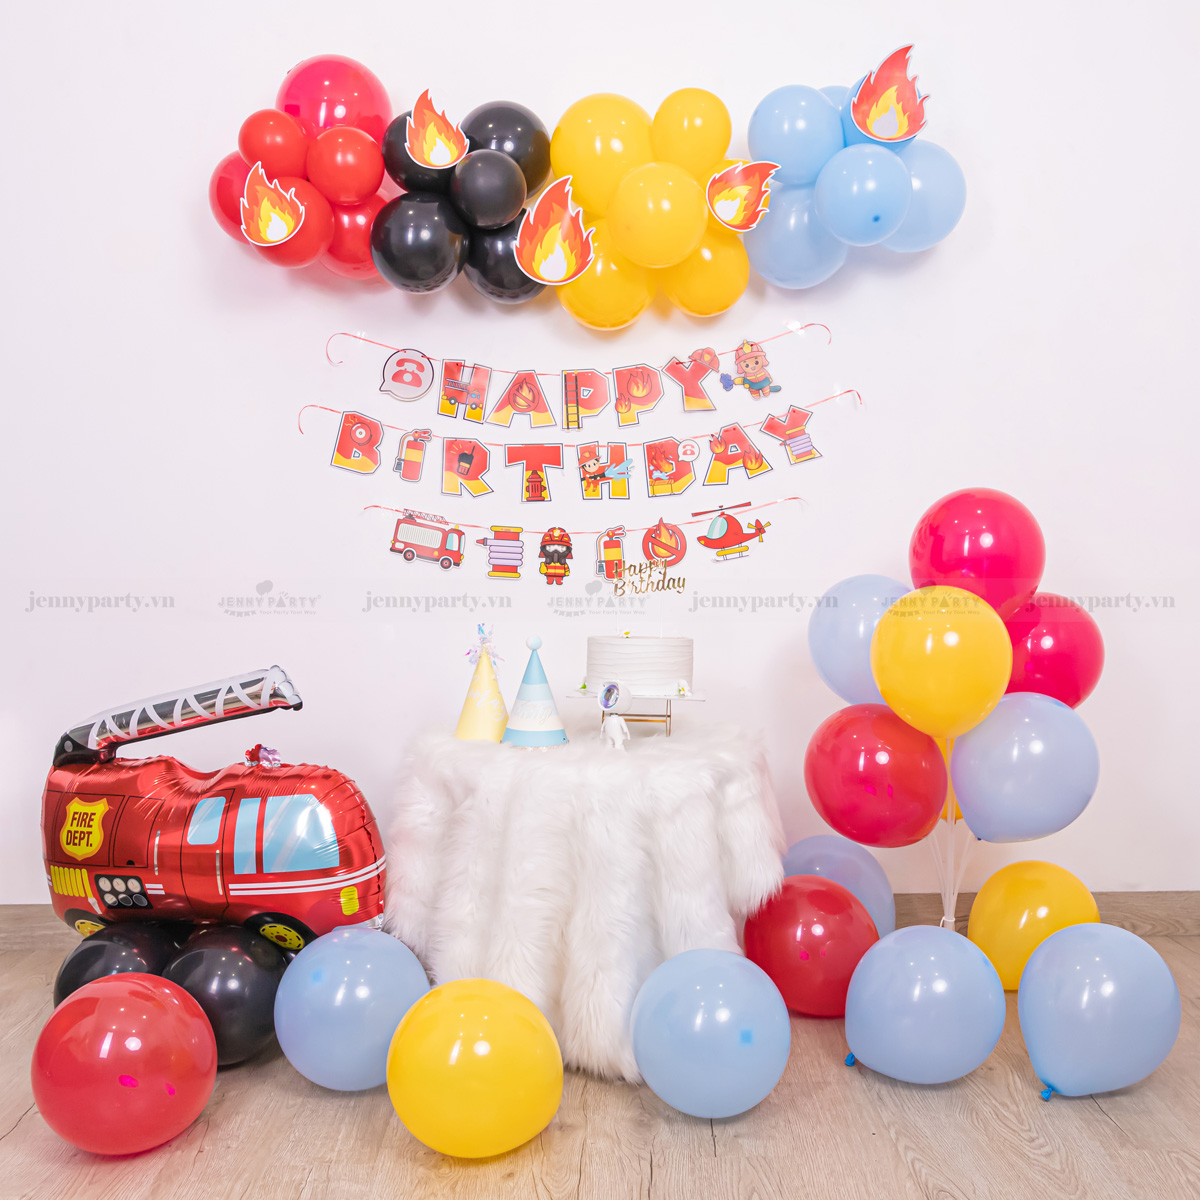 Combo trang trí sinh nhật khủng long KL01  Phụ kiện trang trí sinh nhật  Hazato Party